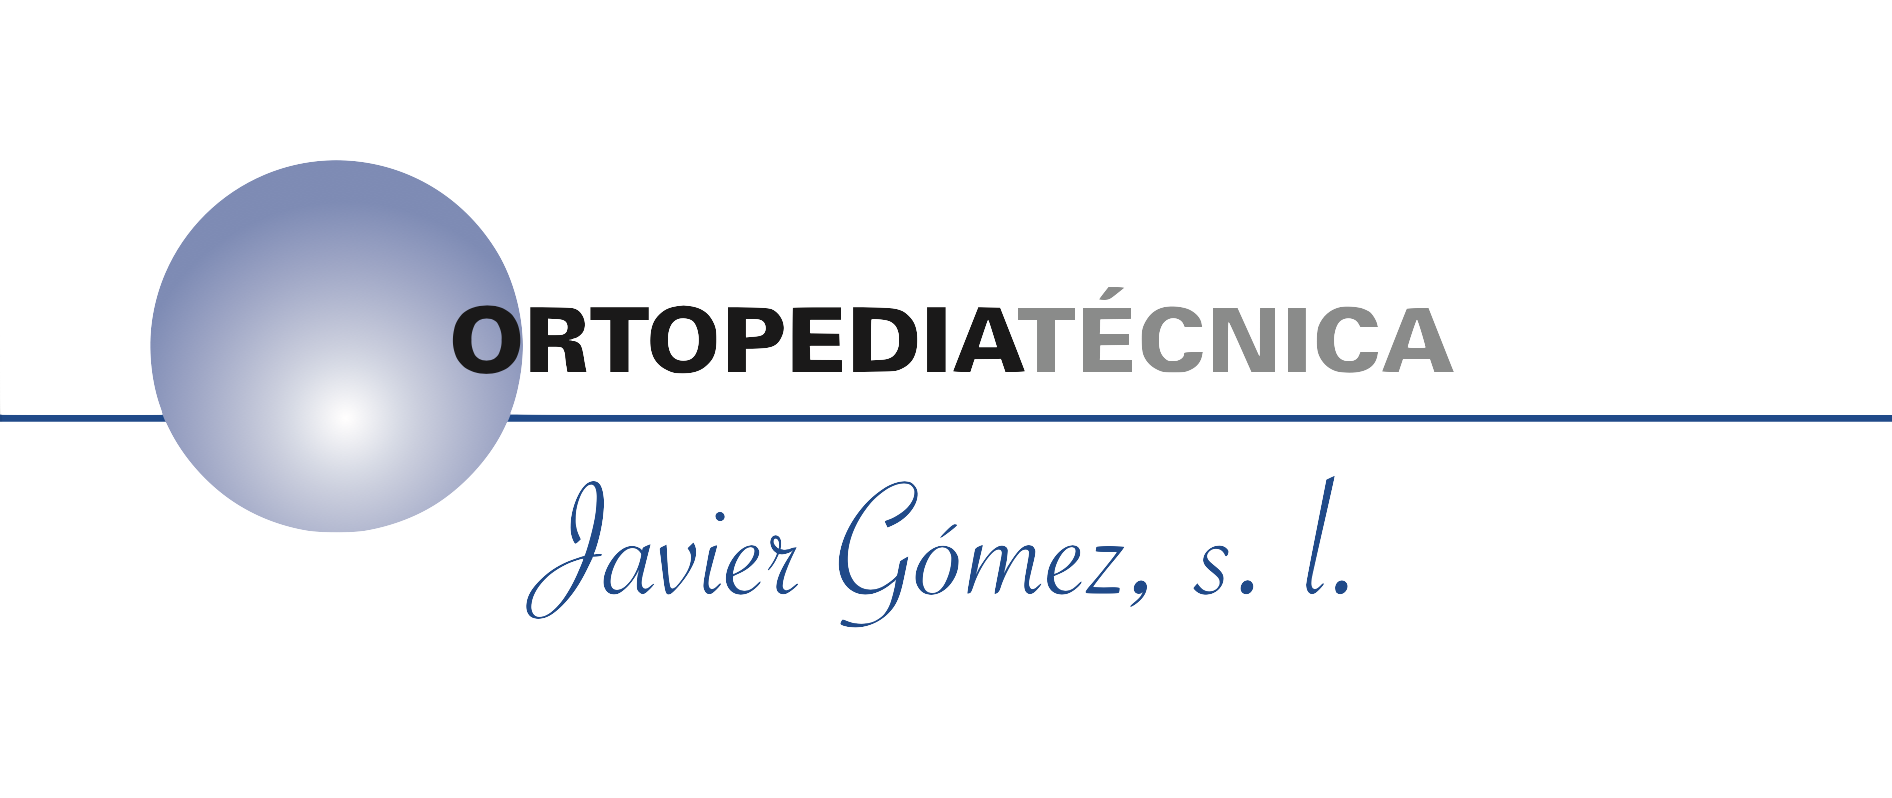 Ortopedia Javier Gomez